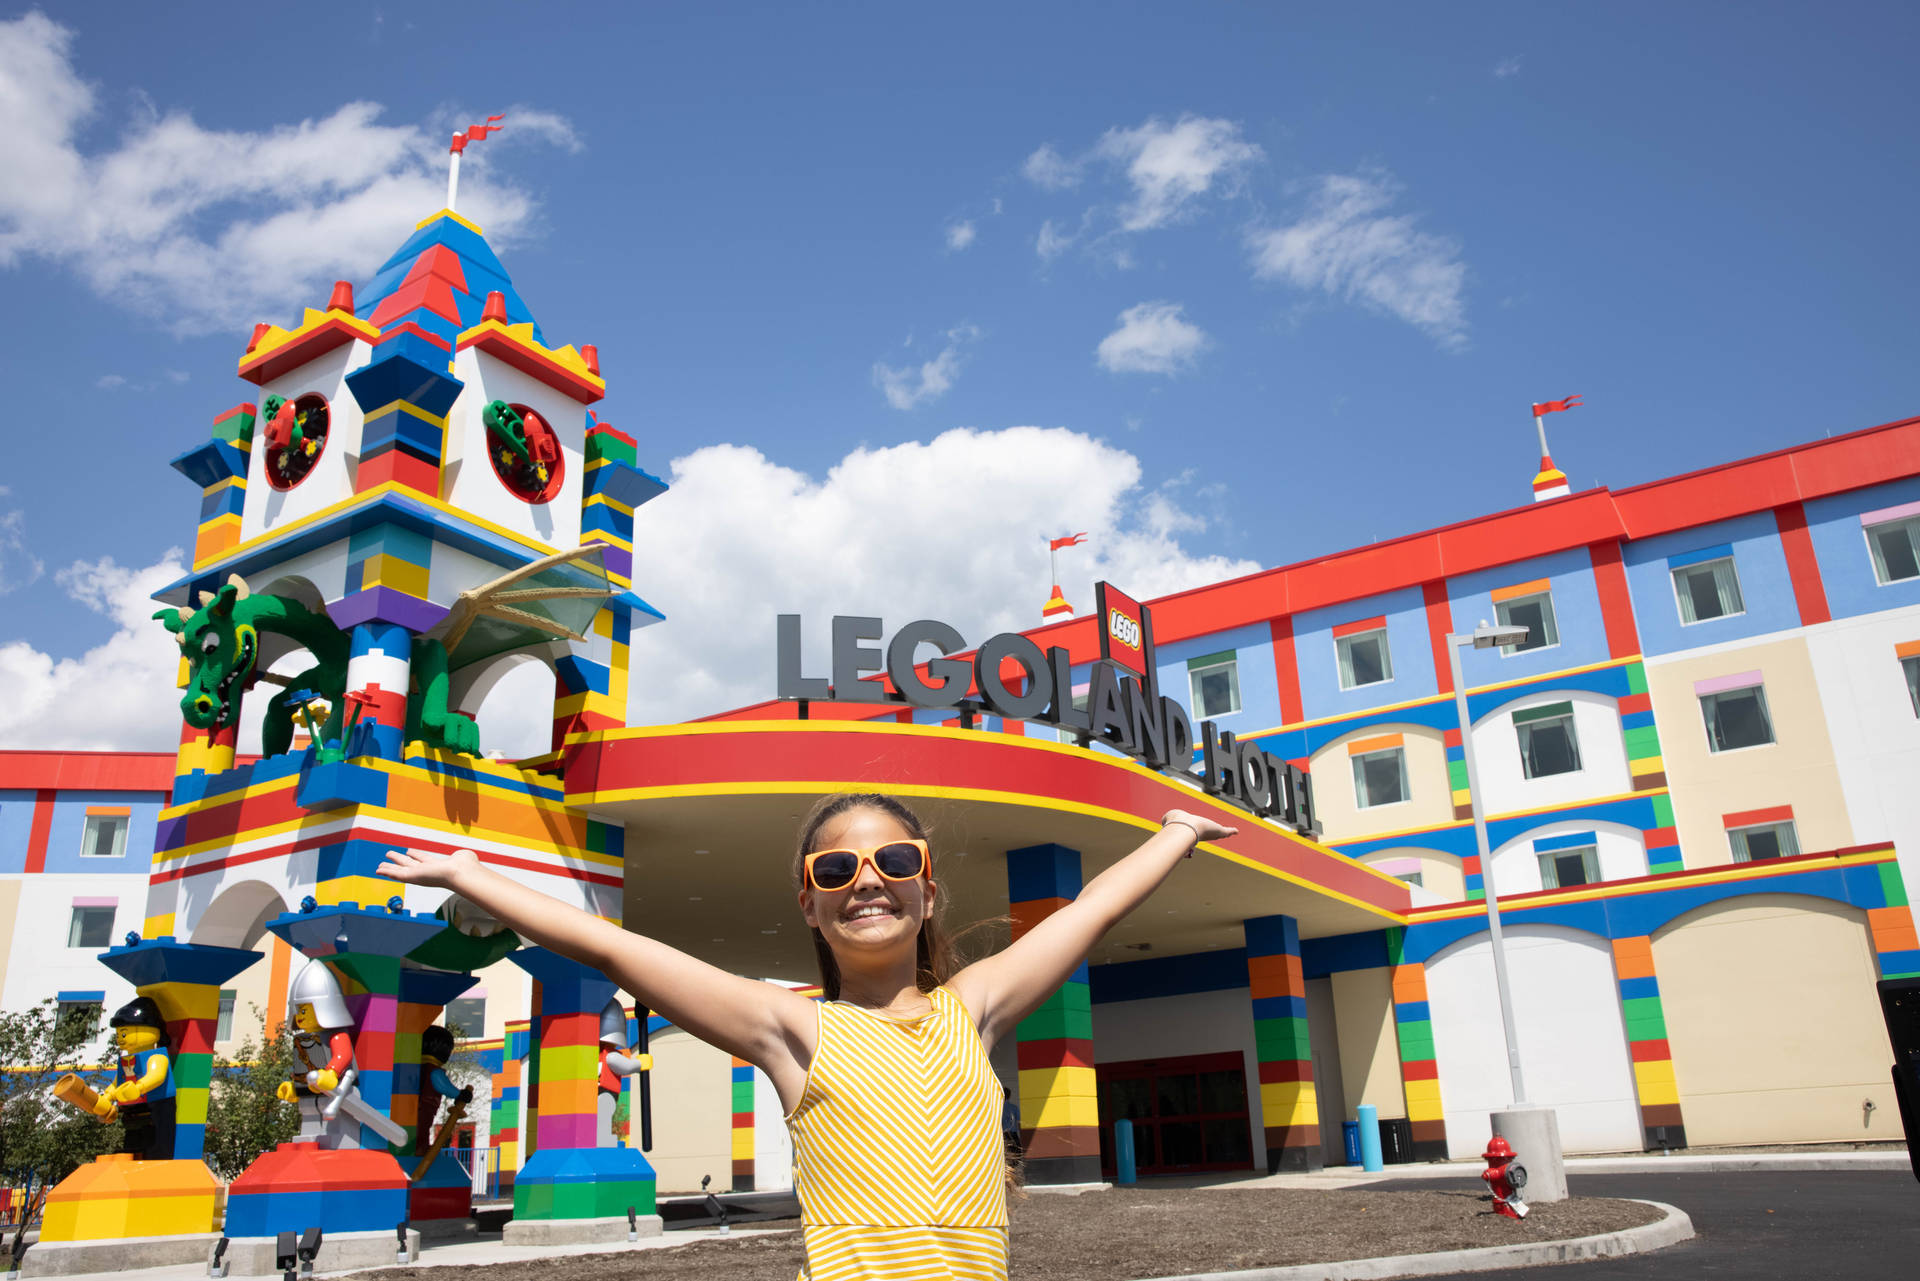 Criançano Hotel Legoland Papel de Parede